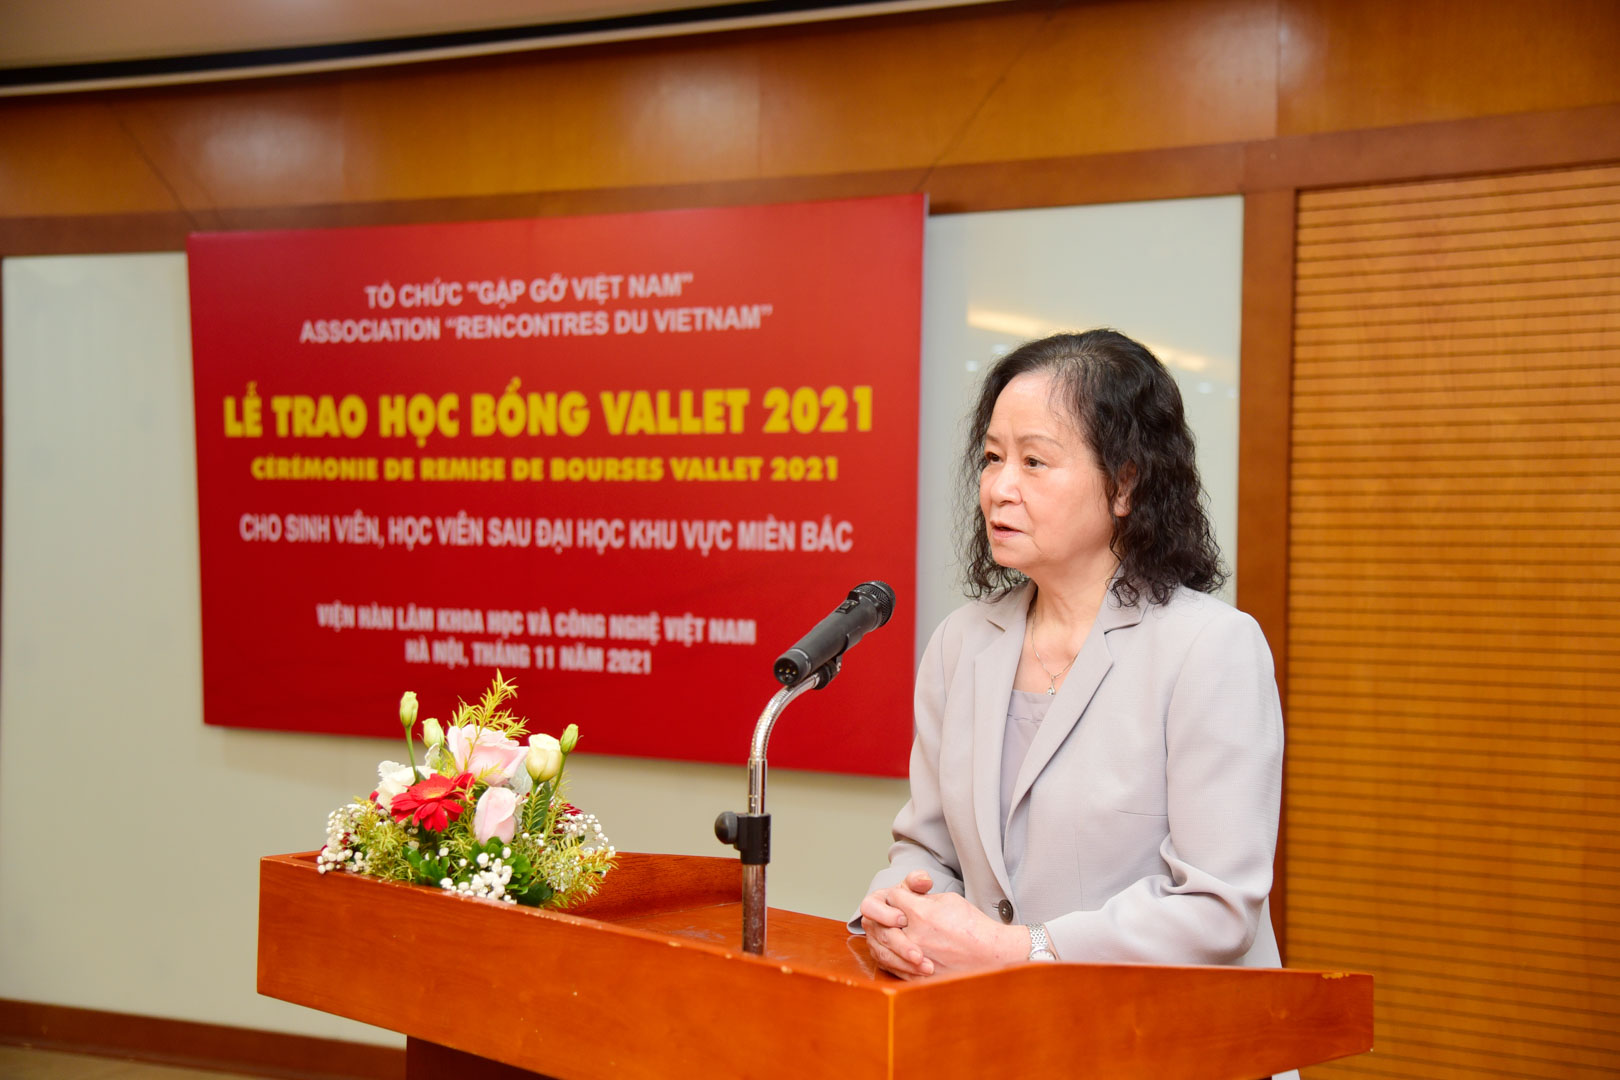 TS. Nguyễn Thị Bích Hà, đại diện Hội đồng xét duyệt học bổng Odon Vallet khu vực phía Bắc